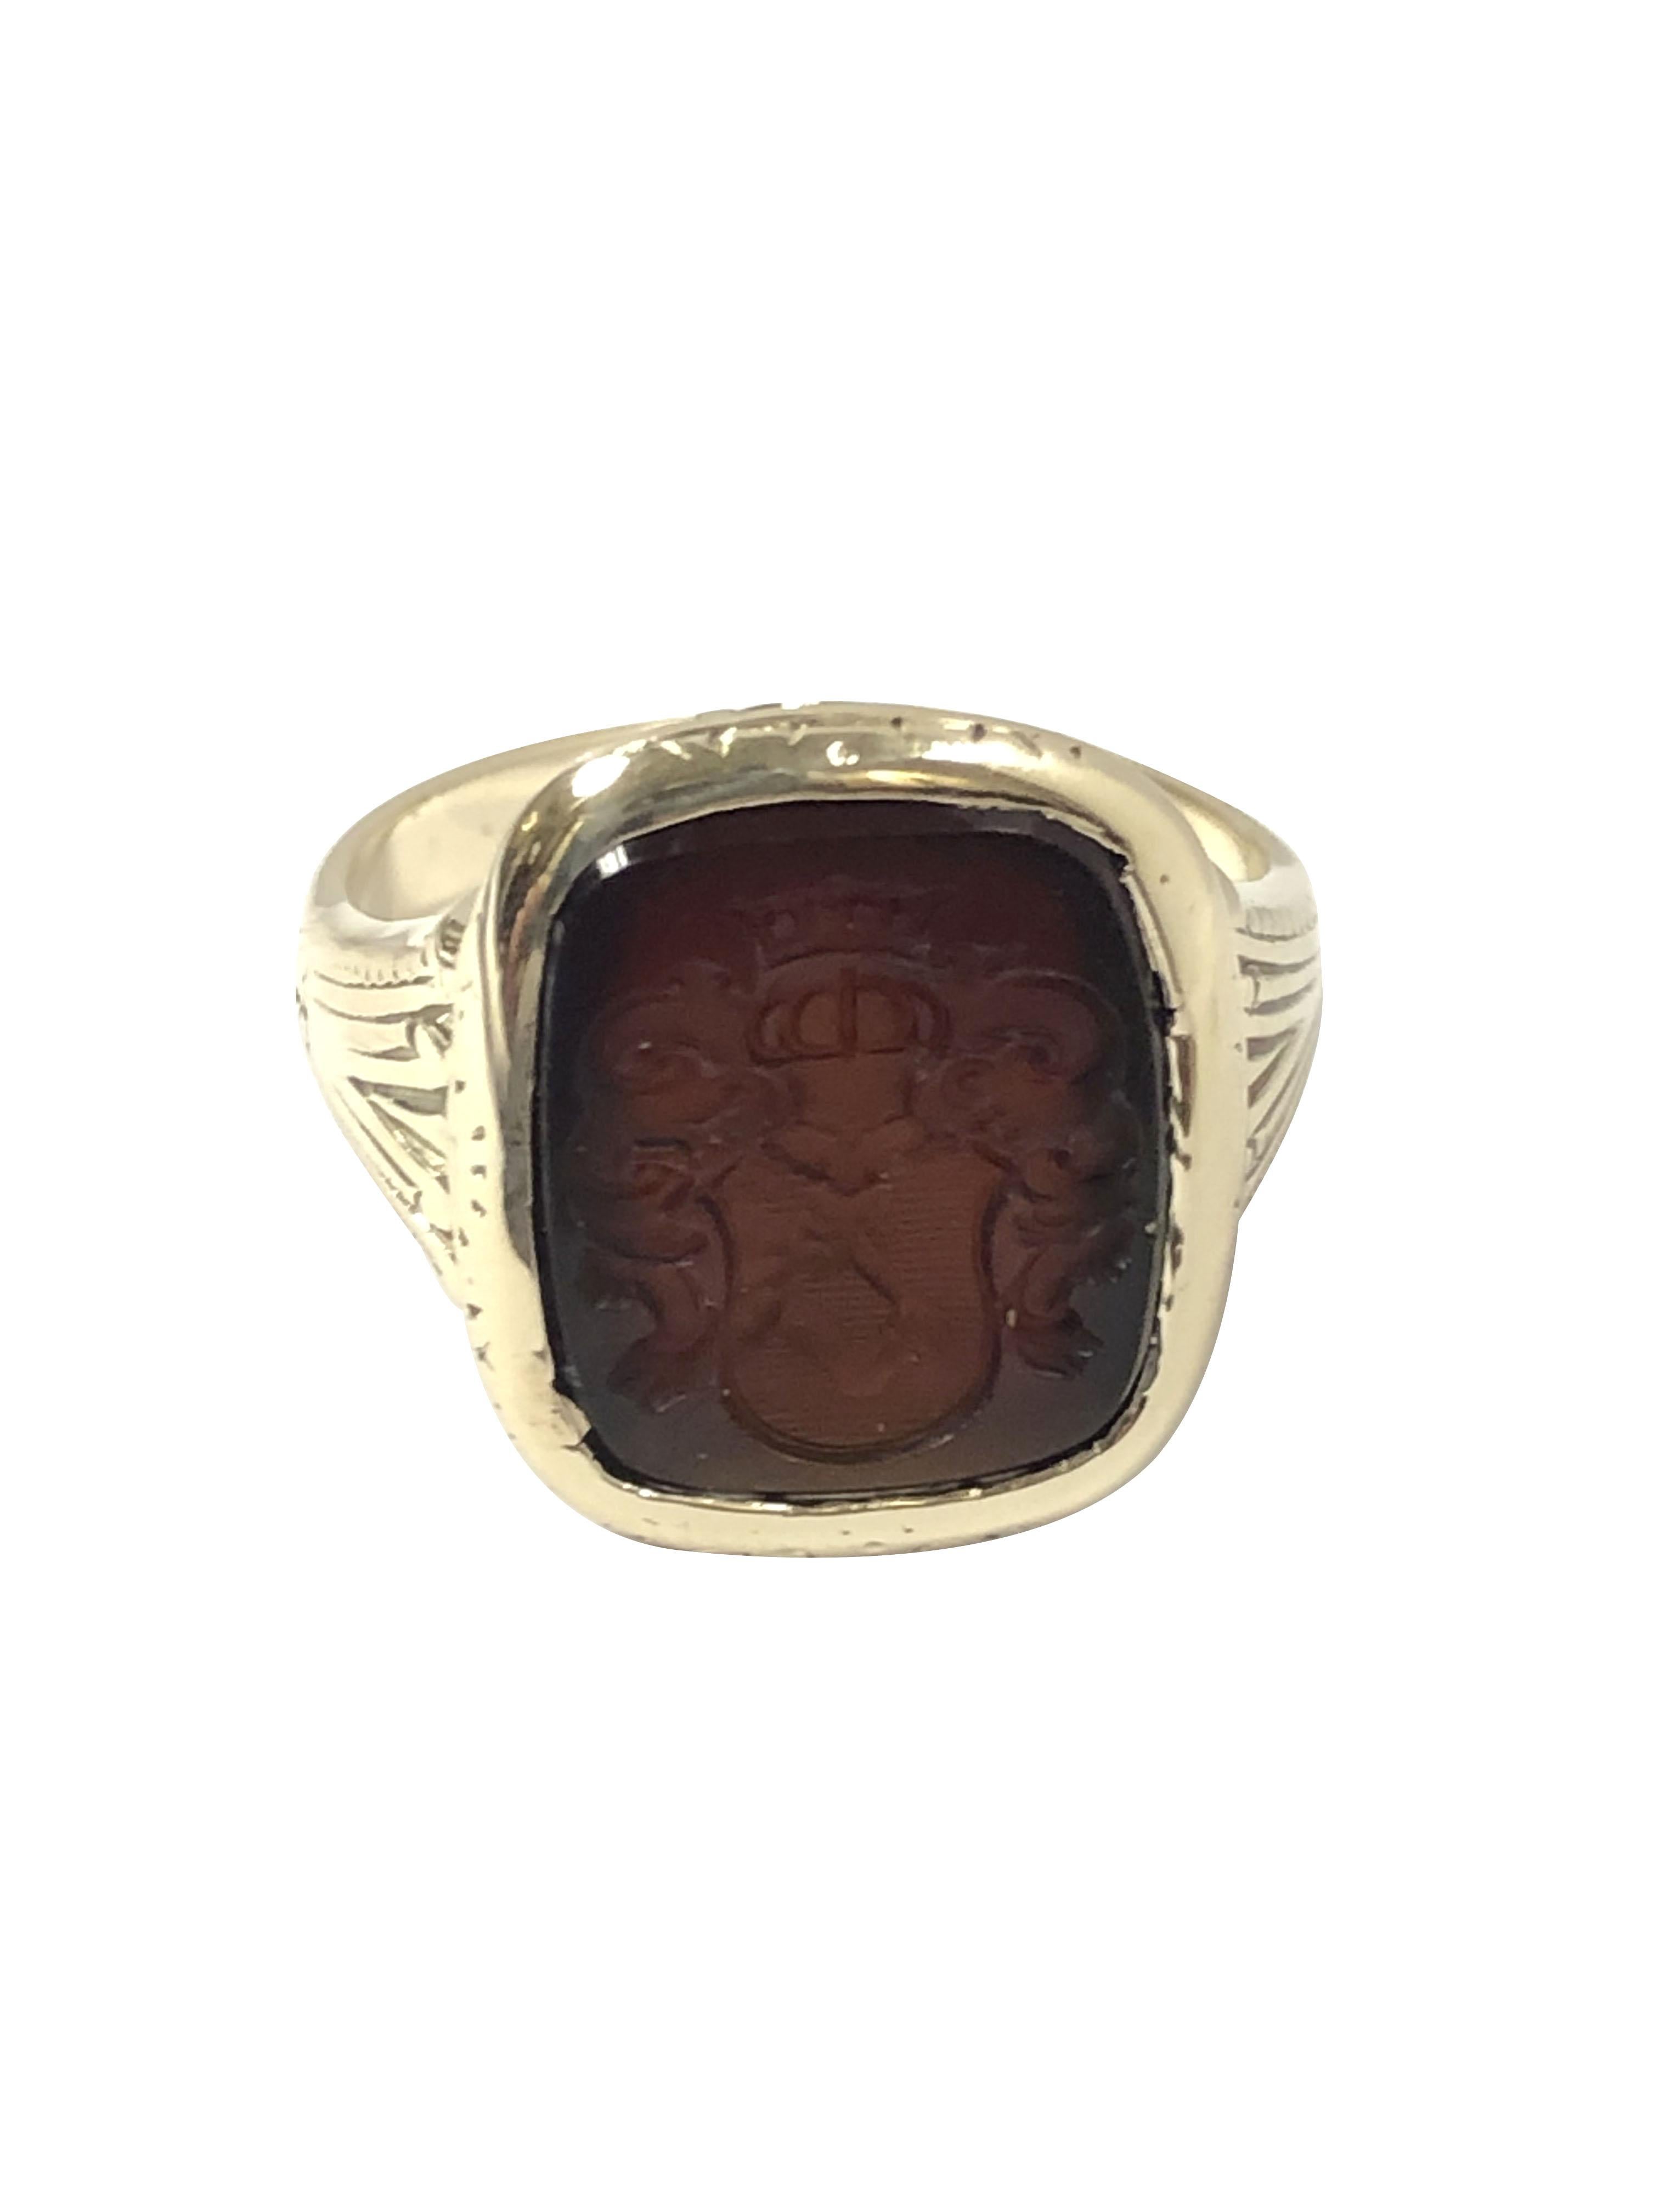 CIRCA 1890 - 1900 14k Gelbgold Crest Ring, die Spitze misst 5/8 x 1/2 Zoll und ist mit einem tiefen rot / braun Karneol mit einem tiefen eingraviert Crest gesetzt. der Ring verfügt über Handgravur Design Arbeit im gesamten. Fingergröße 7 1/4. 